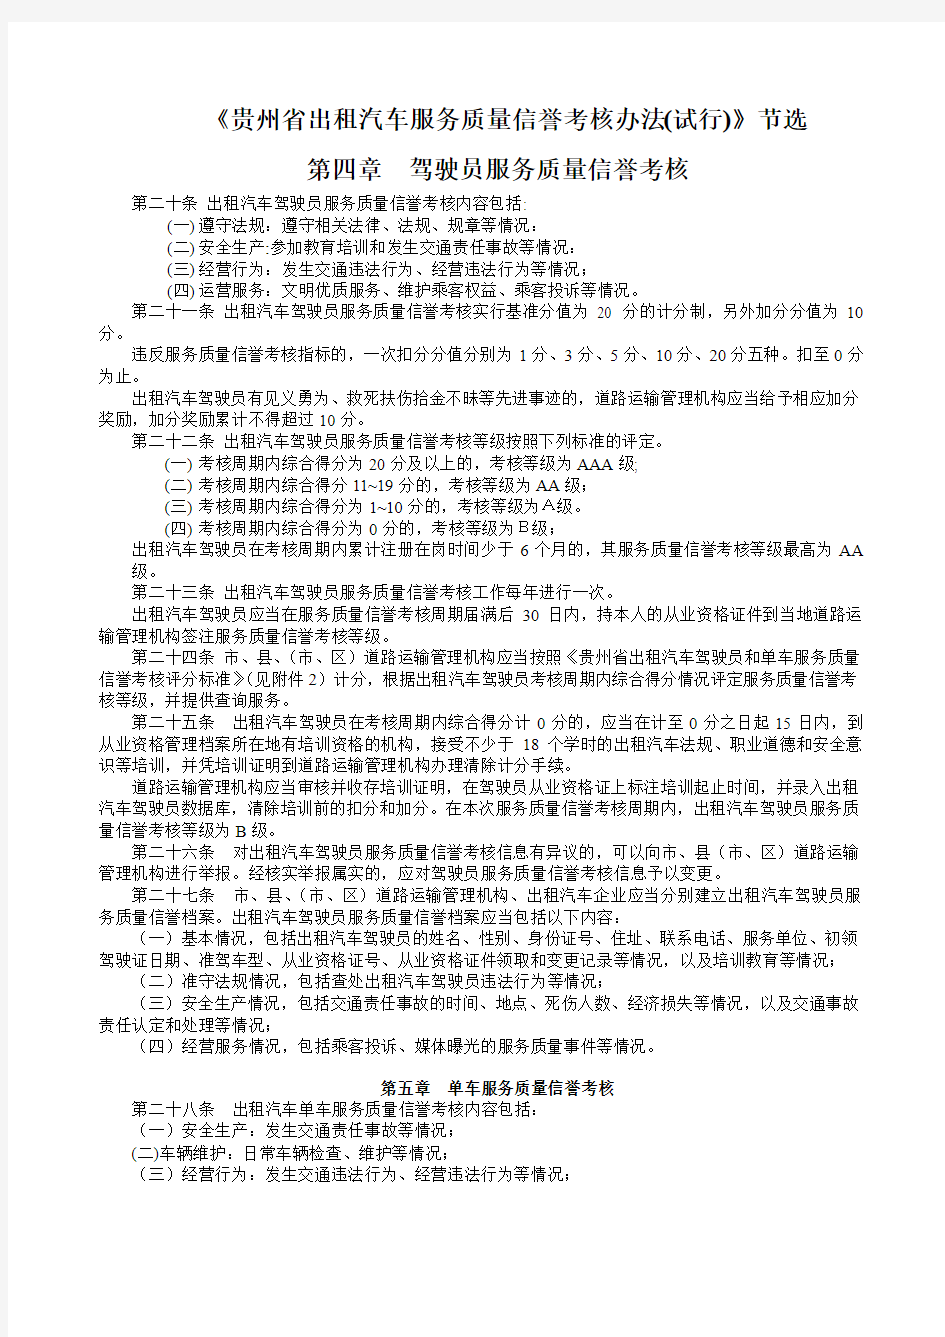 贵州省出租汽车服务质量信誉考核办法(1)